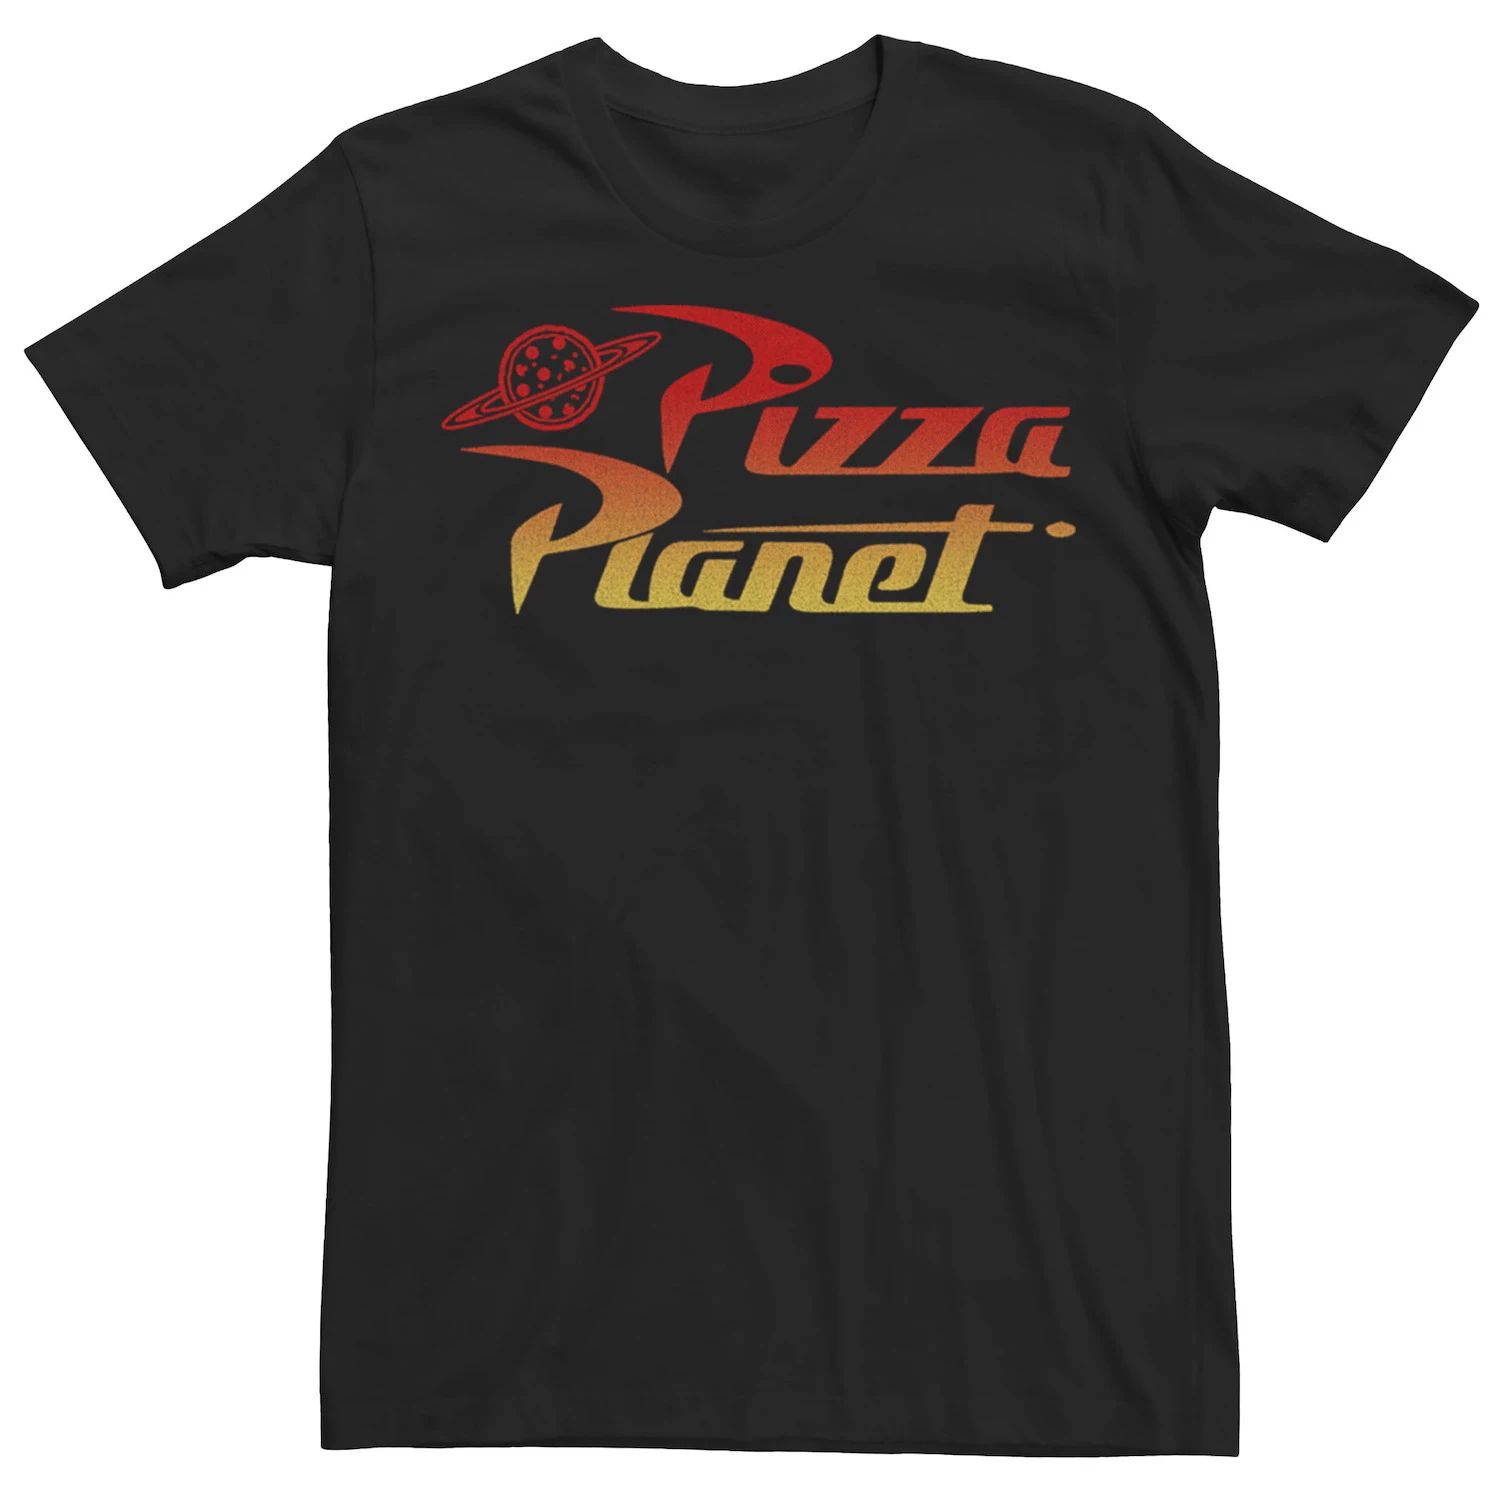 Мужская футболка с градиентным логотипом Disney/Pixar «История игрушек Пицца Планета» Disney / Pixar, черный мужская футболка планета пицца s черный